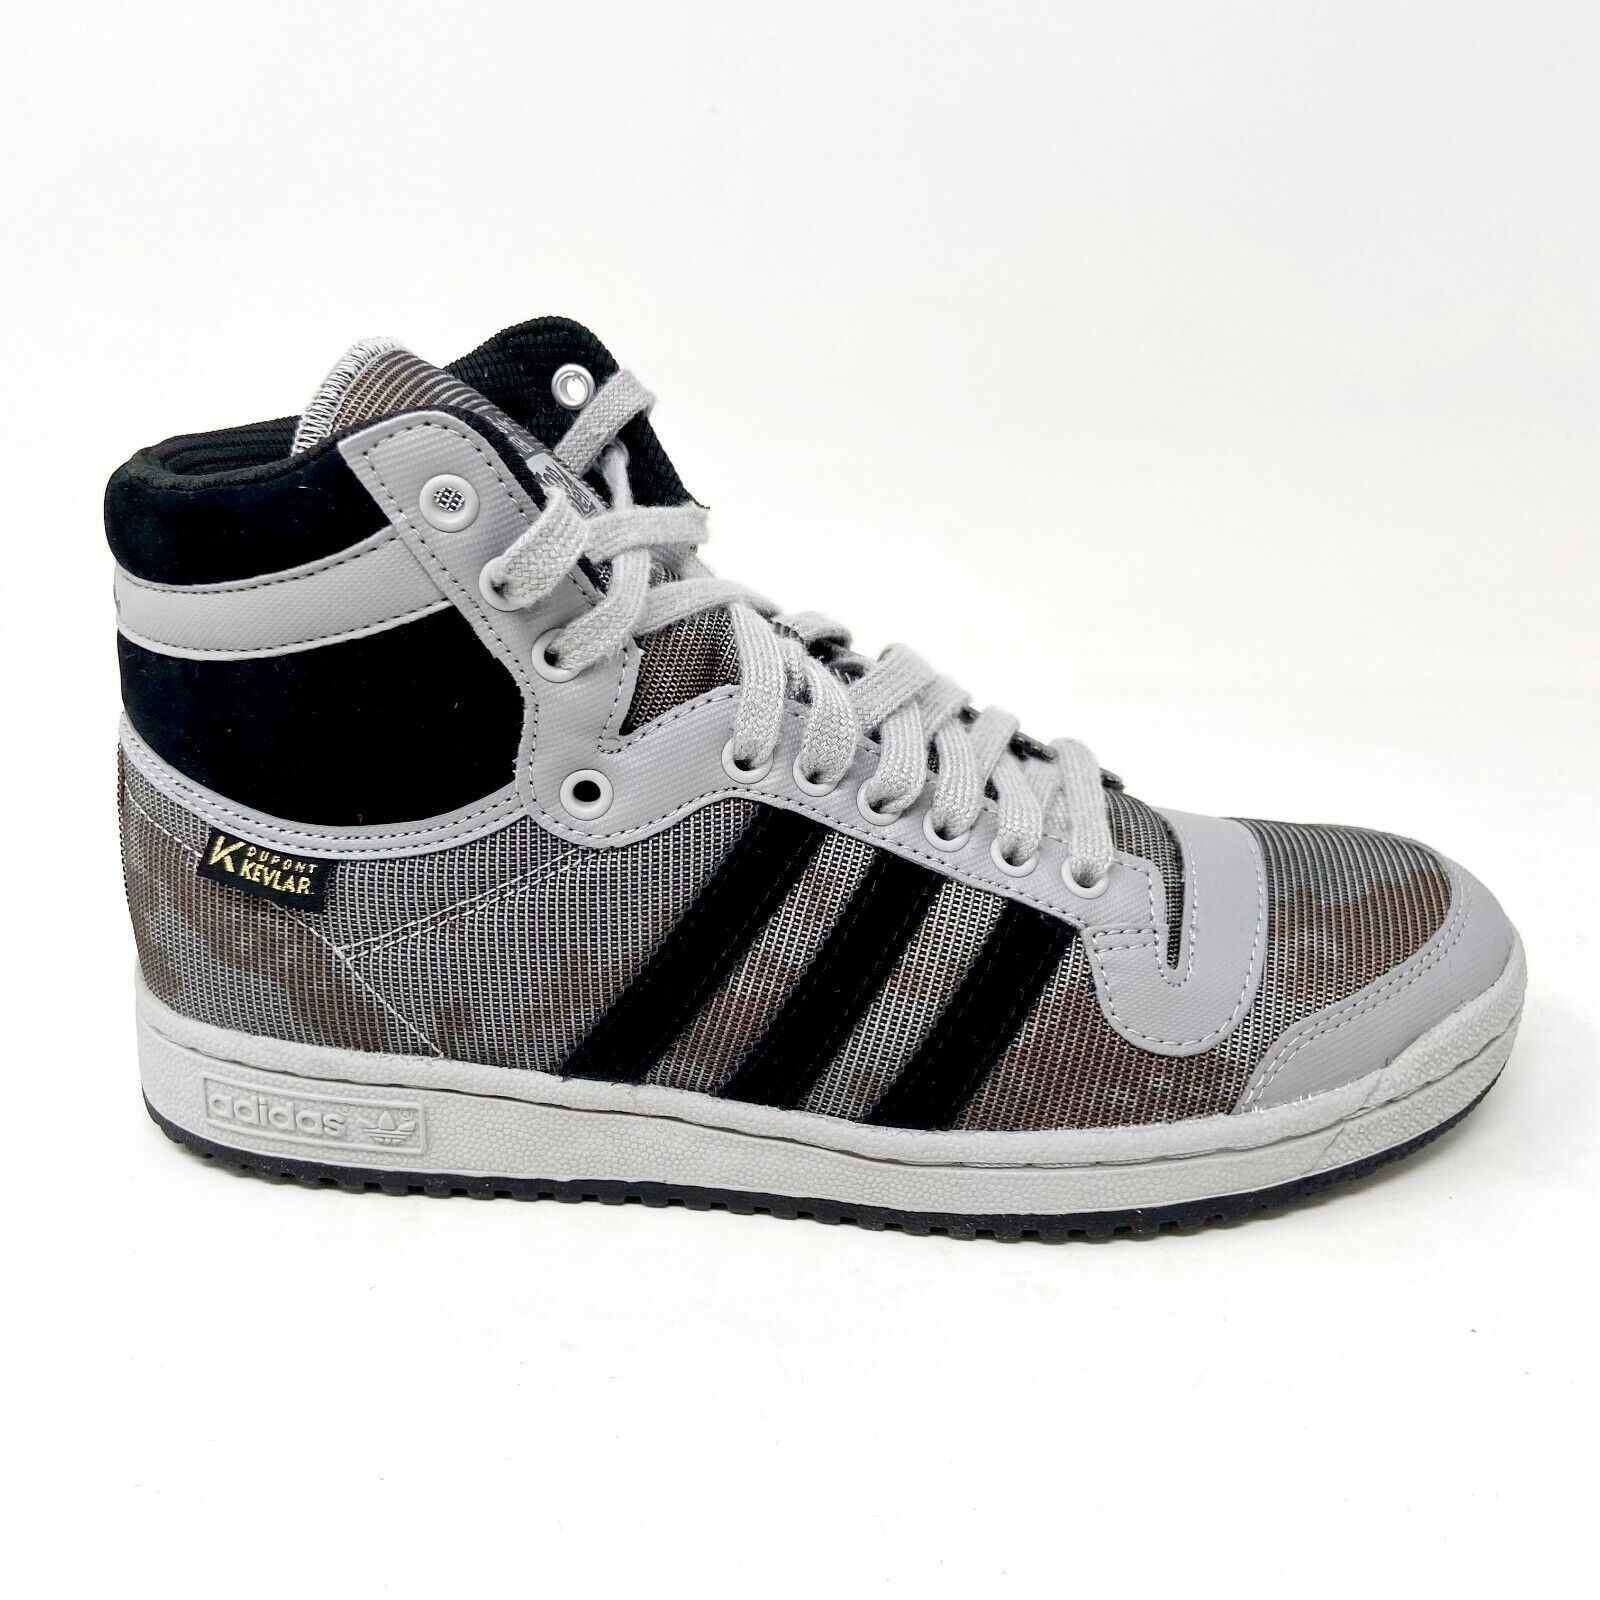 Adidas Originals Top Ten Hi Gray Black Dupont Kevlar Mens Sneakers S86002